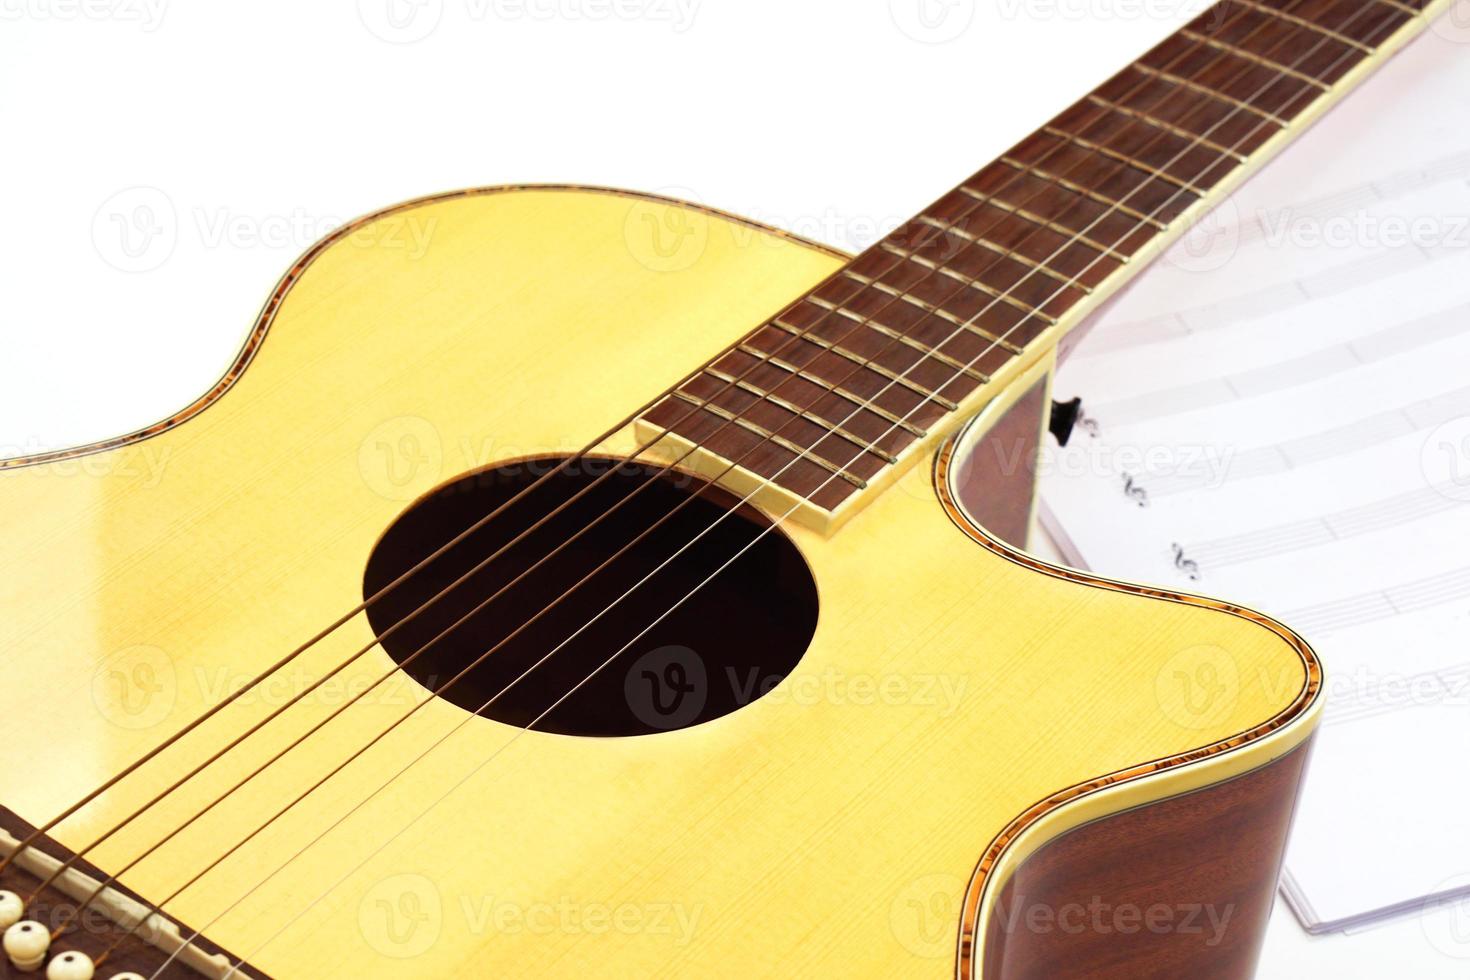 akustisk gitarr med musik anteckningar mot vit bakgrund. underhållning, kärlek och musik begrepp. foto